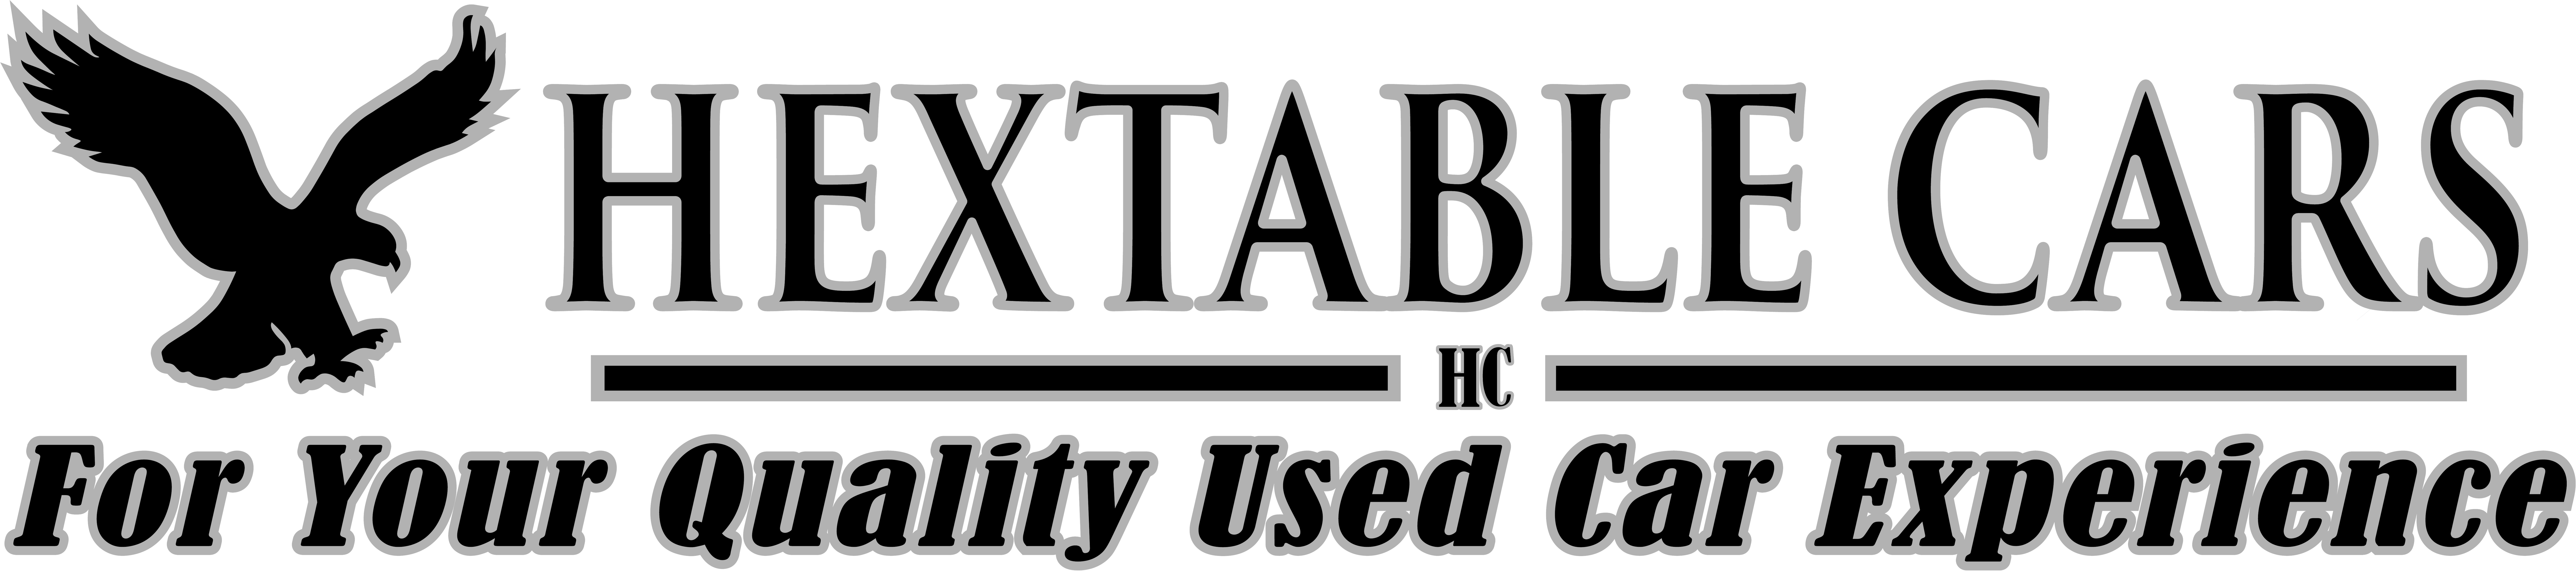 Hextable Cars Uk Ltd Logo